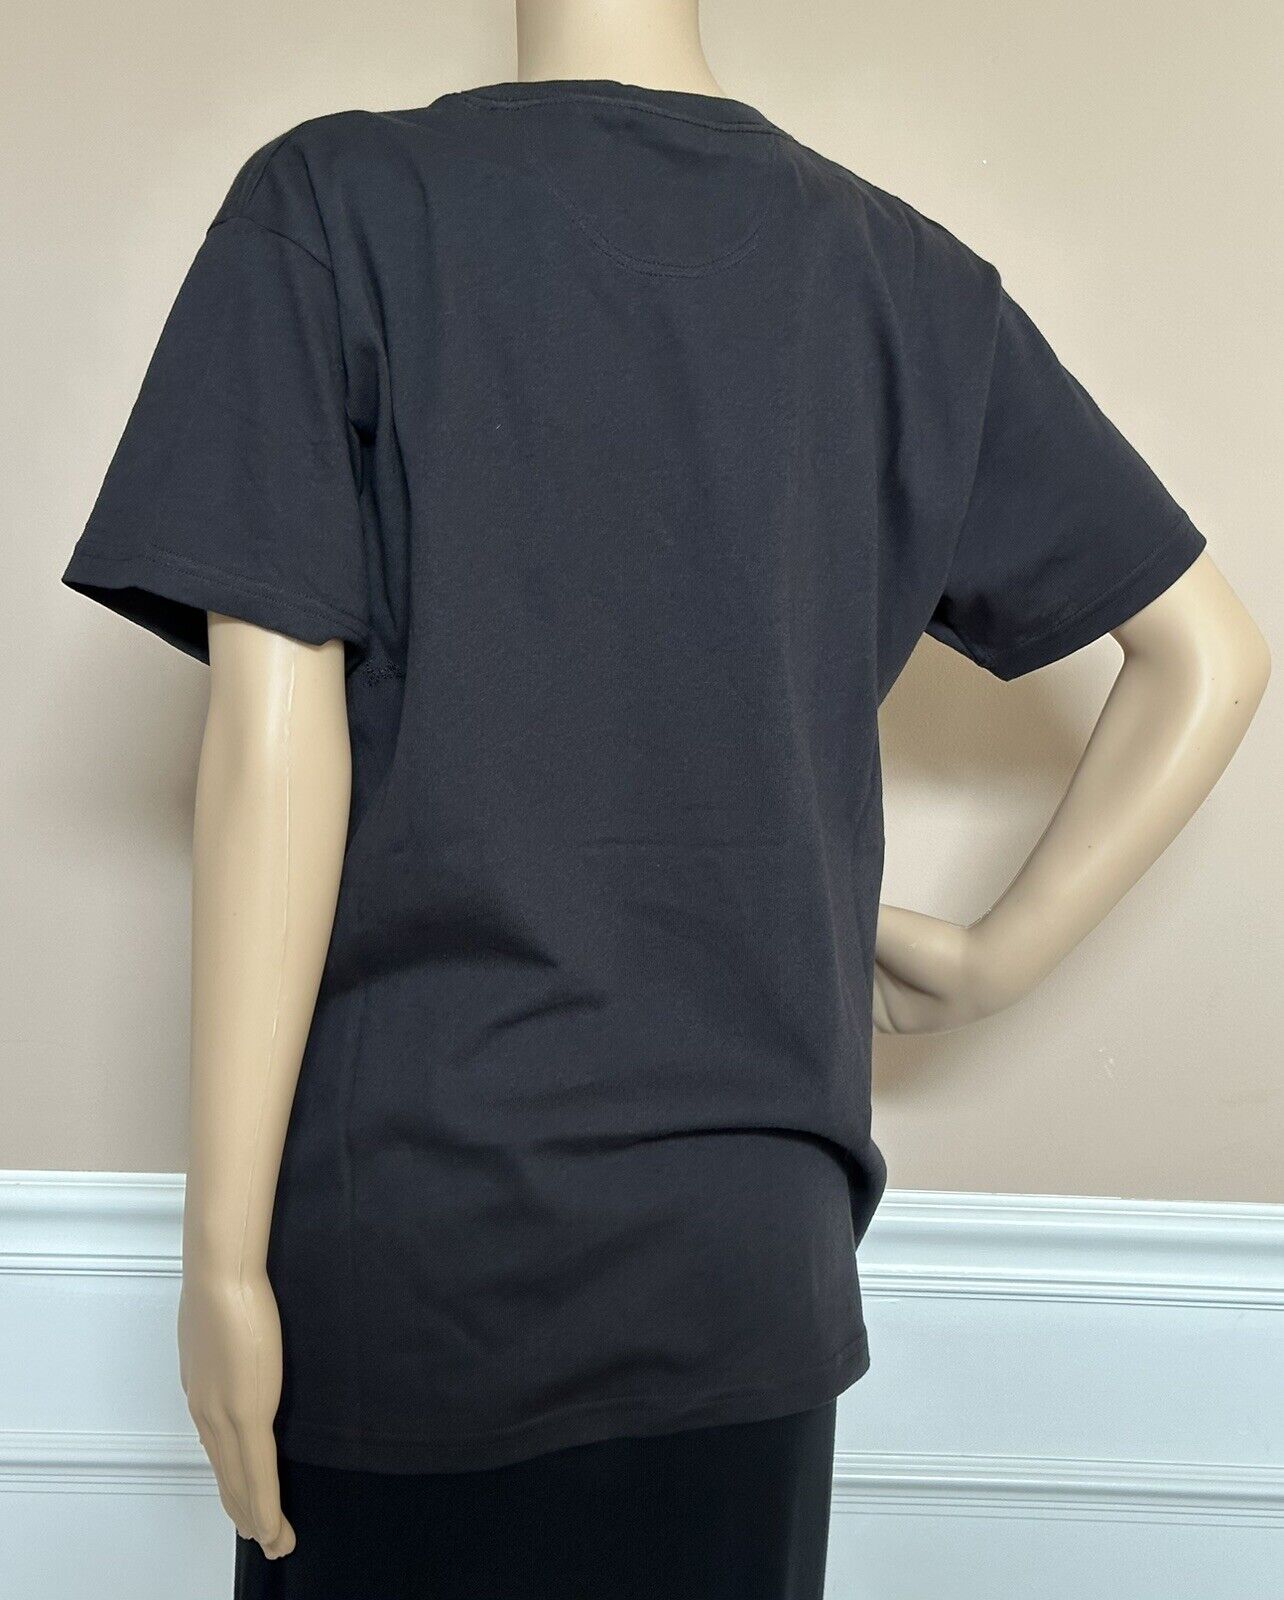 NWT Bottega Veneta Women's Sunset Light Cotton Top T-shirt Size 44 613935